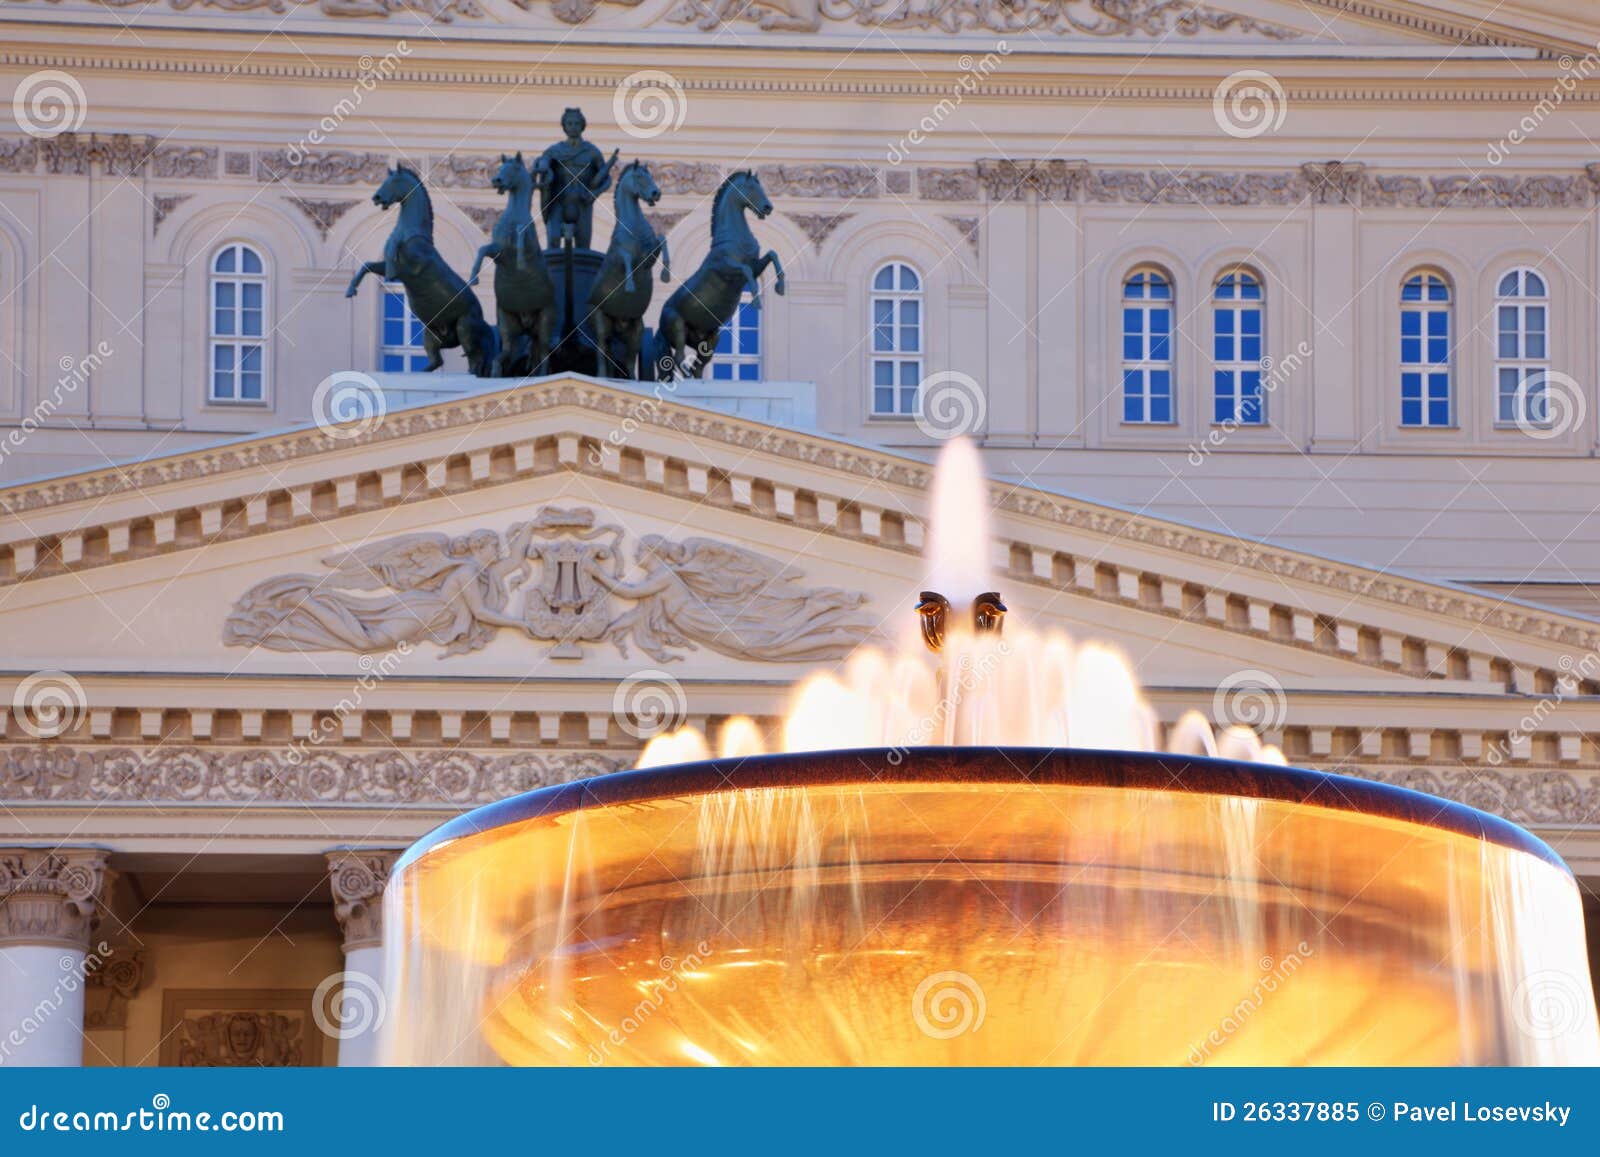 fountain and quadriga of bolshoi theatre